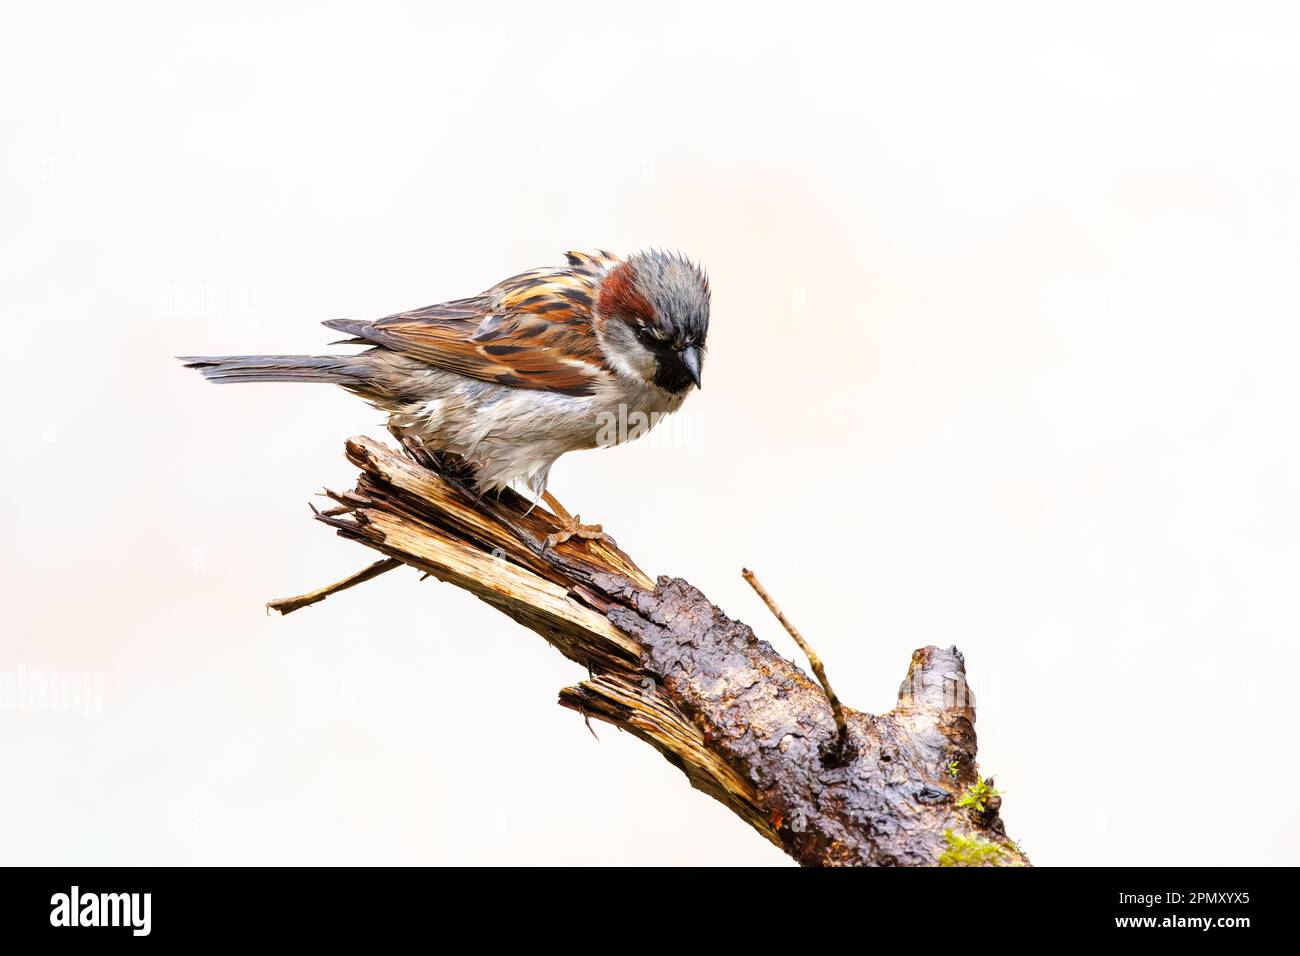 Nahaufnahme eines regengetränkten House Sparrow, Passer domesticus, hoch oben auf einem Ast mit klitzekleinem Gefieder mit Blick auf einen verschwommenen gelblichen Hintern Stockfoto